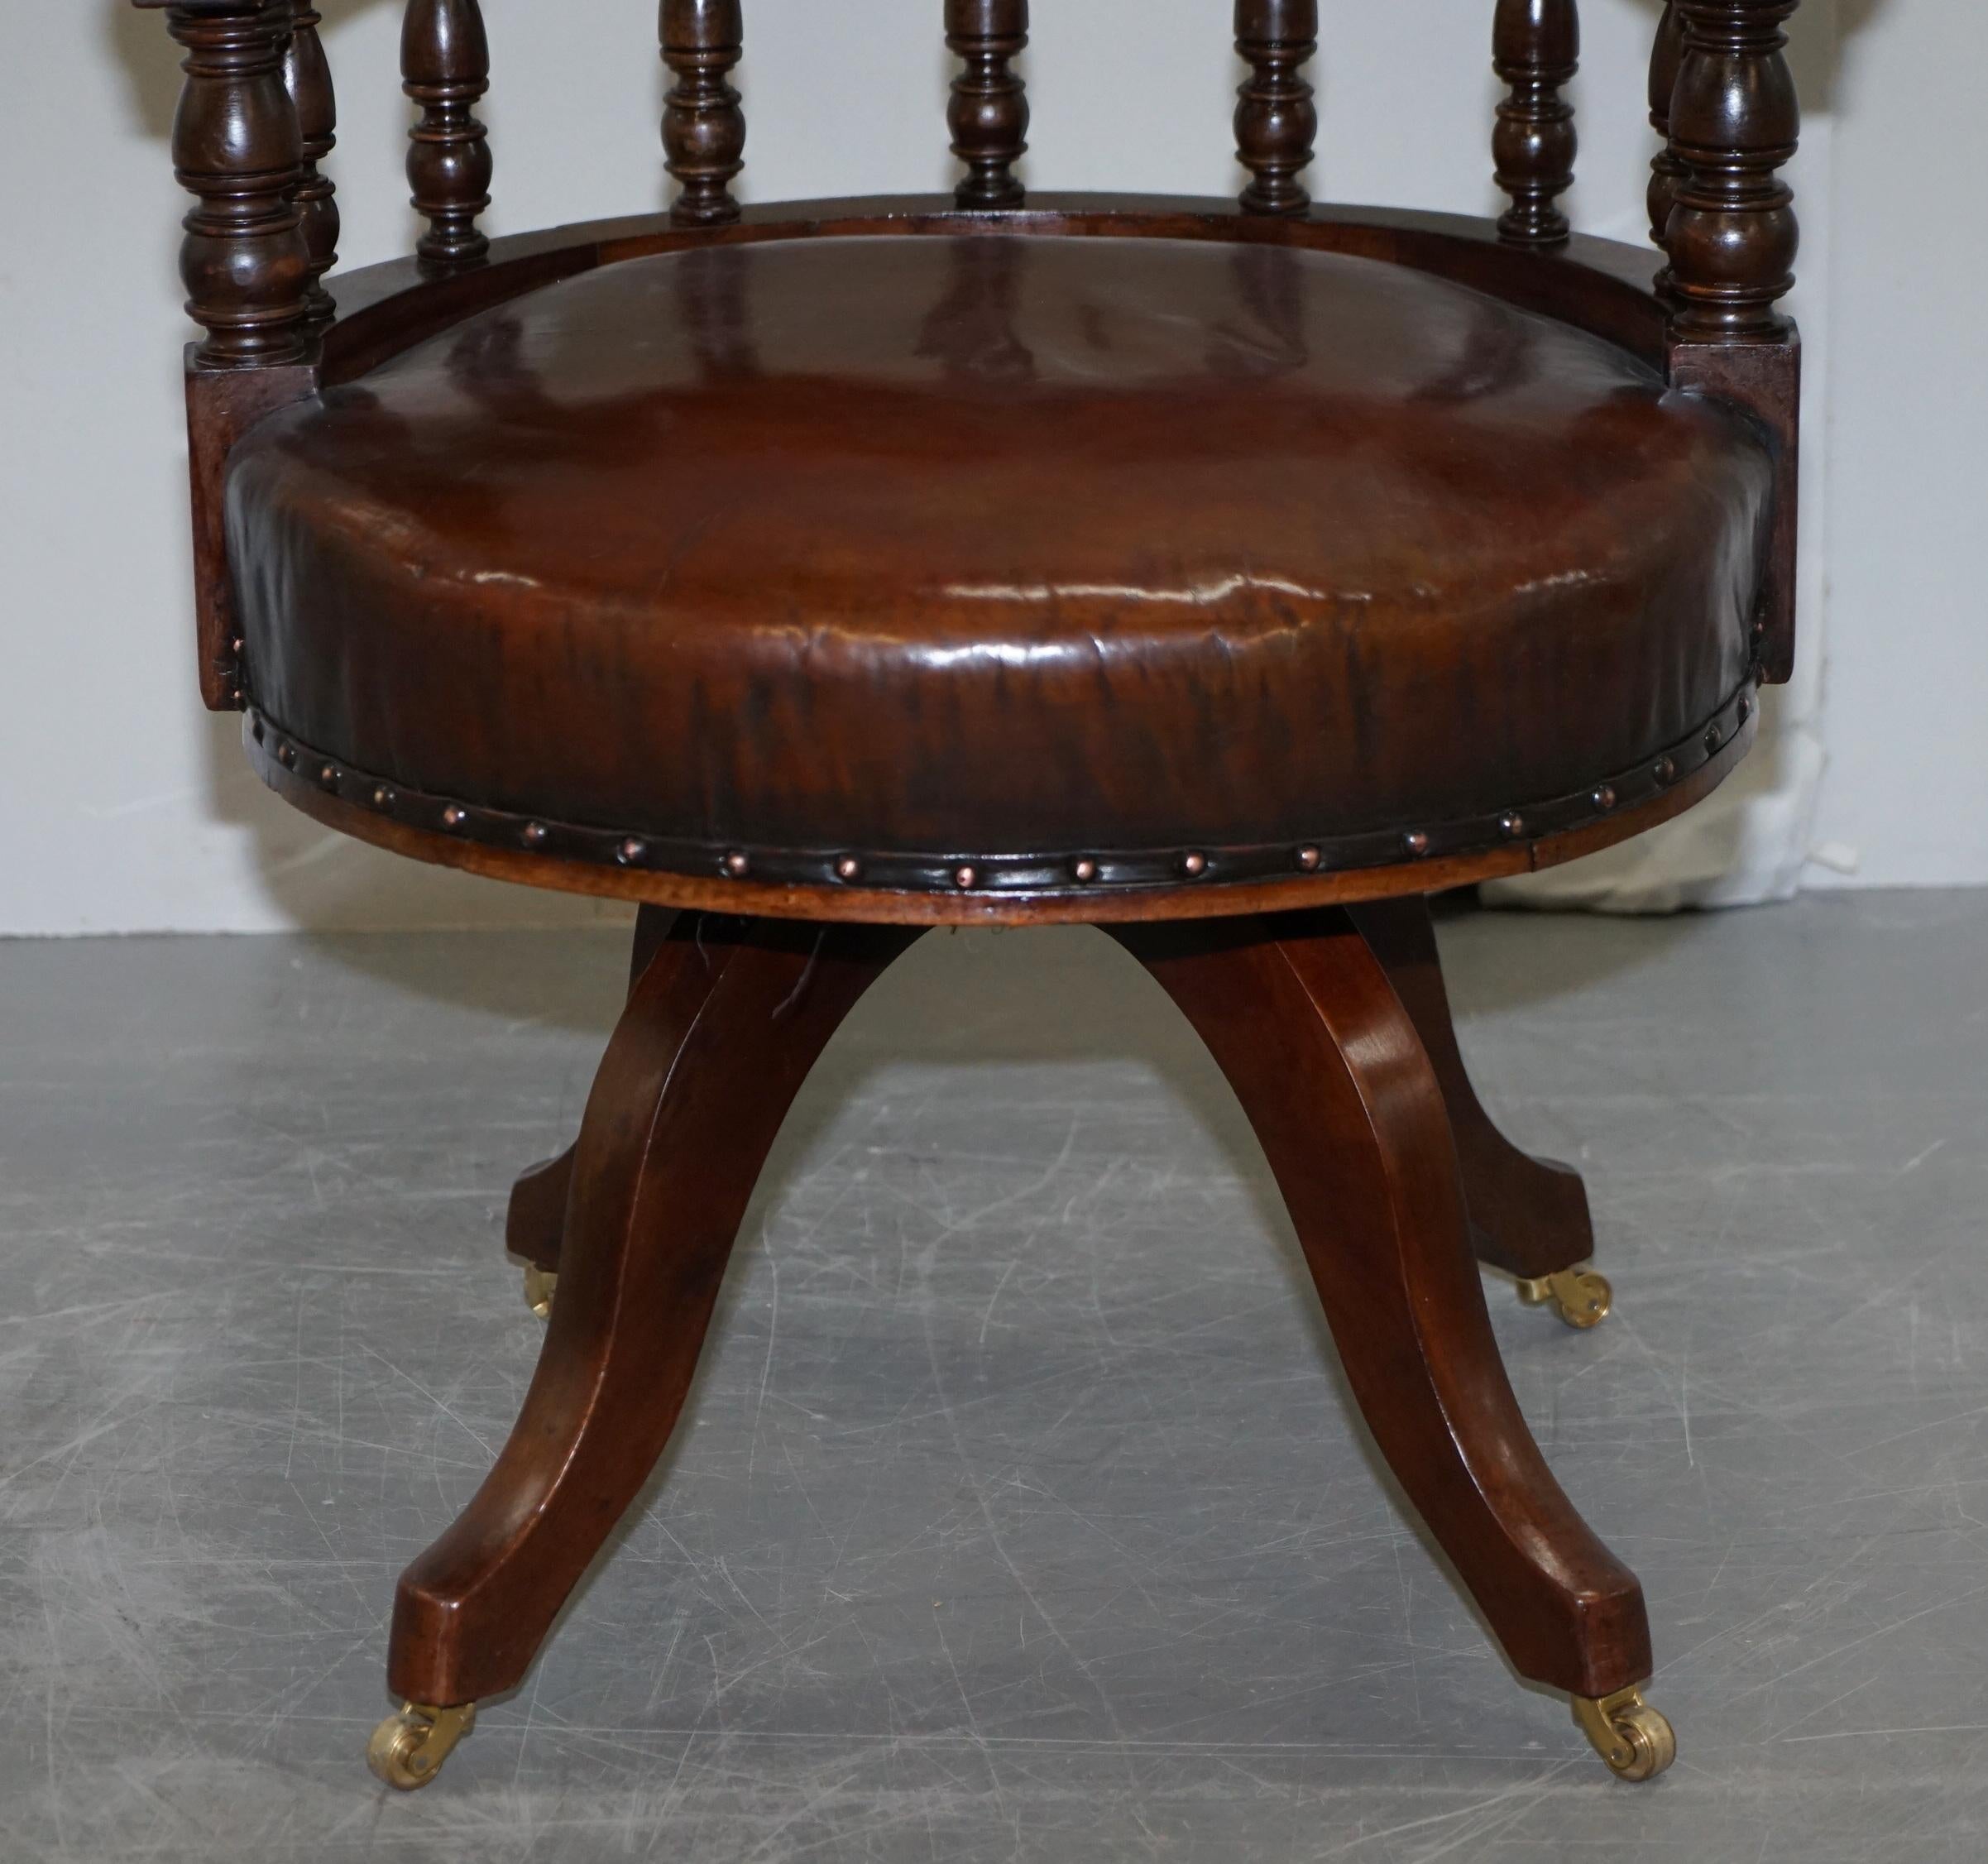 Ancienne chaise de capitaine pivotante en cuir marron cigare profond entièrement restaurée, datant d'environ 1860 3